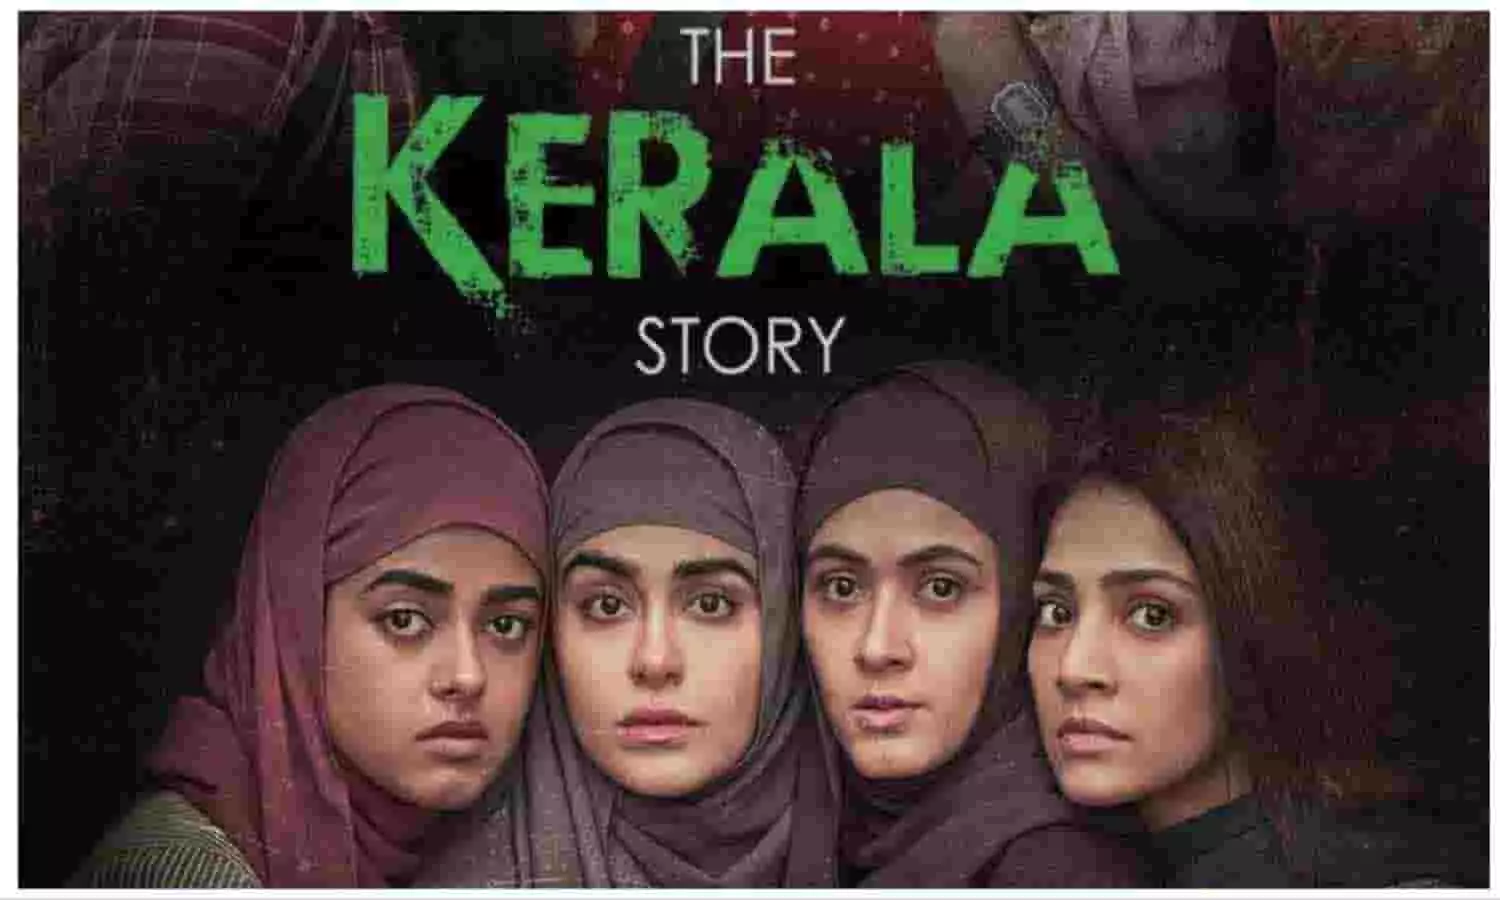 The Kerala Story box office collection Day 1 In Hindi: पहले दिन द केरल स्टोरी ने की रिकॉर्ड तोड़ कमाई, बॉक्स ऑफिस में लग रही ताबड़तोड़ भीड़